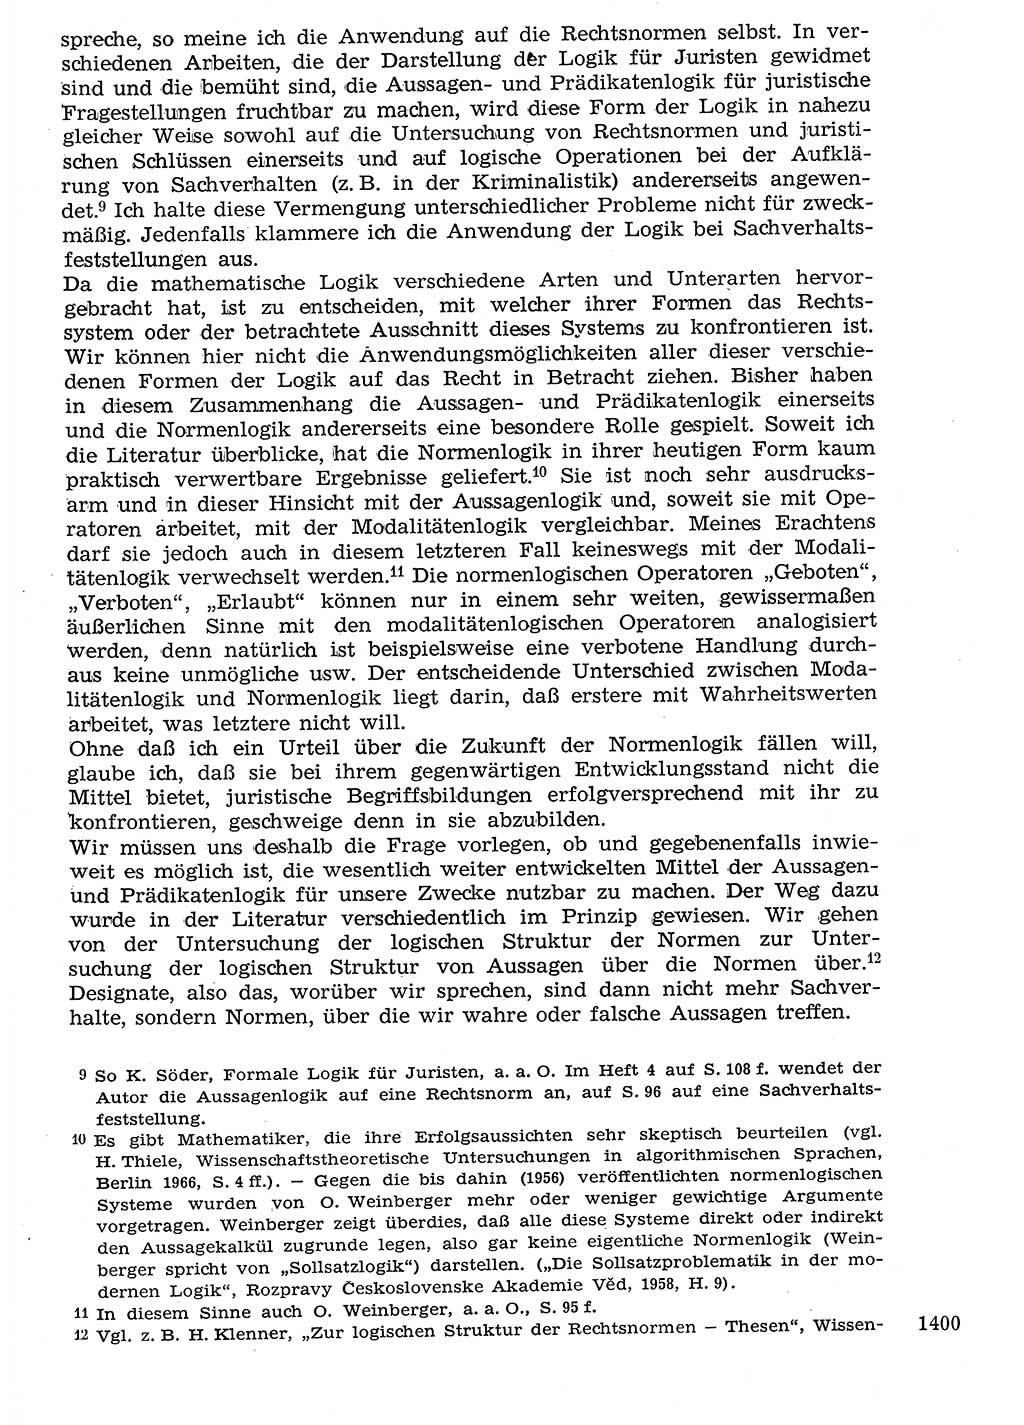 Staat und Recht (StuR), 17. Jahrgang [Deutsche Demokratische Republik (DDR)] 1968, Seite 1400 (StuR DDR 1968, S. 1400)